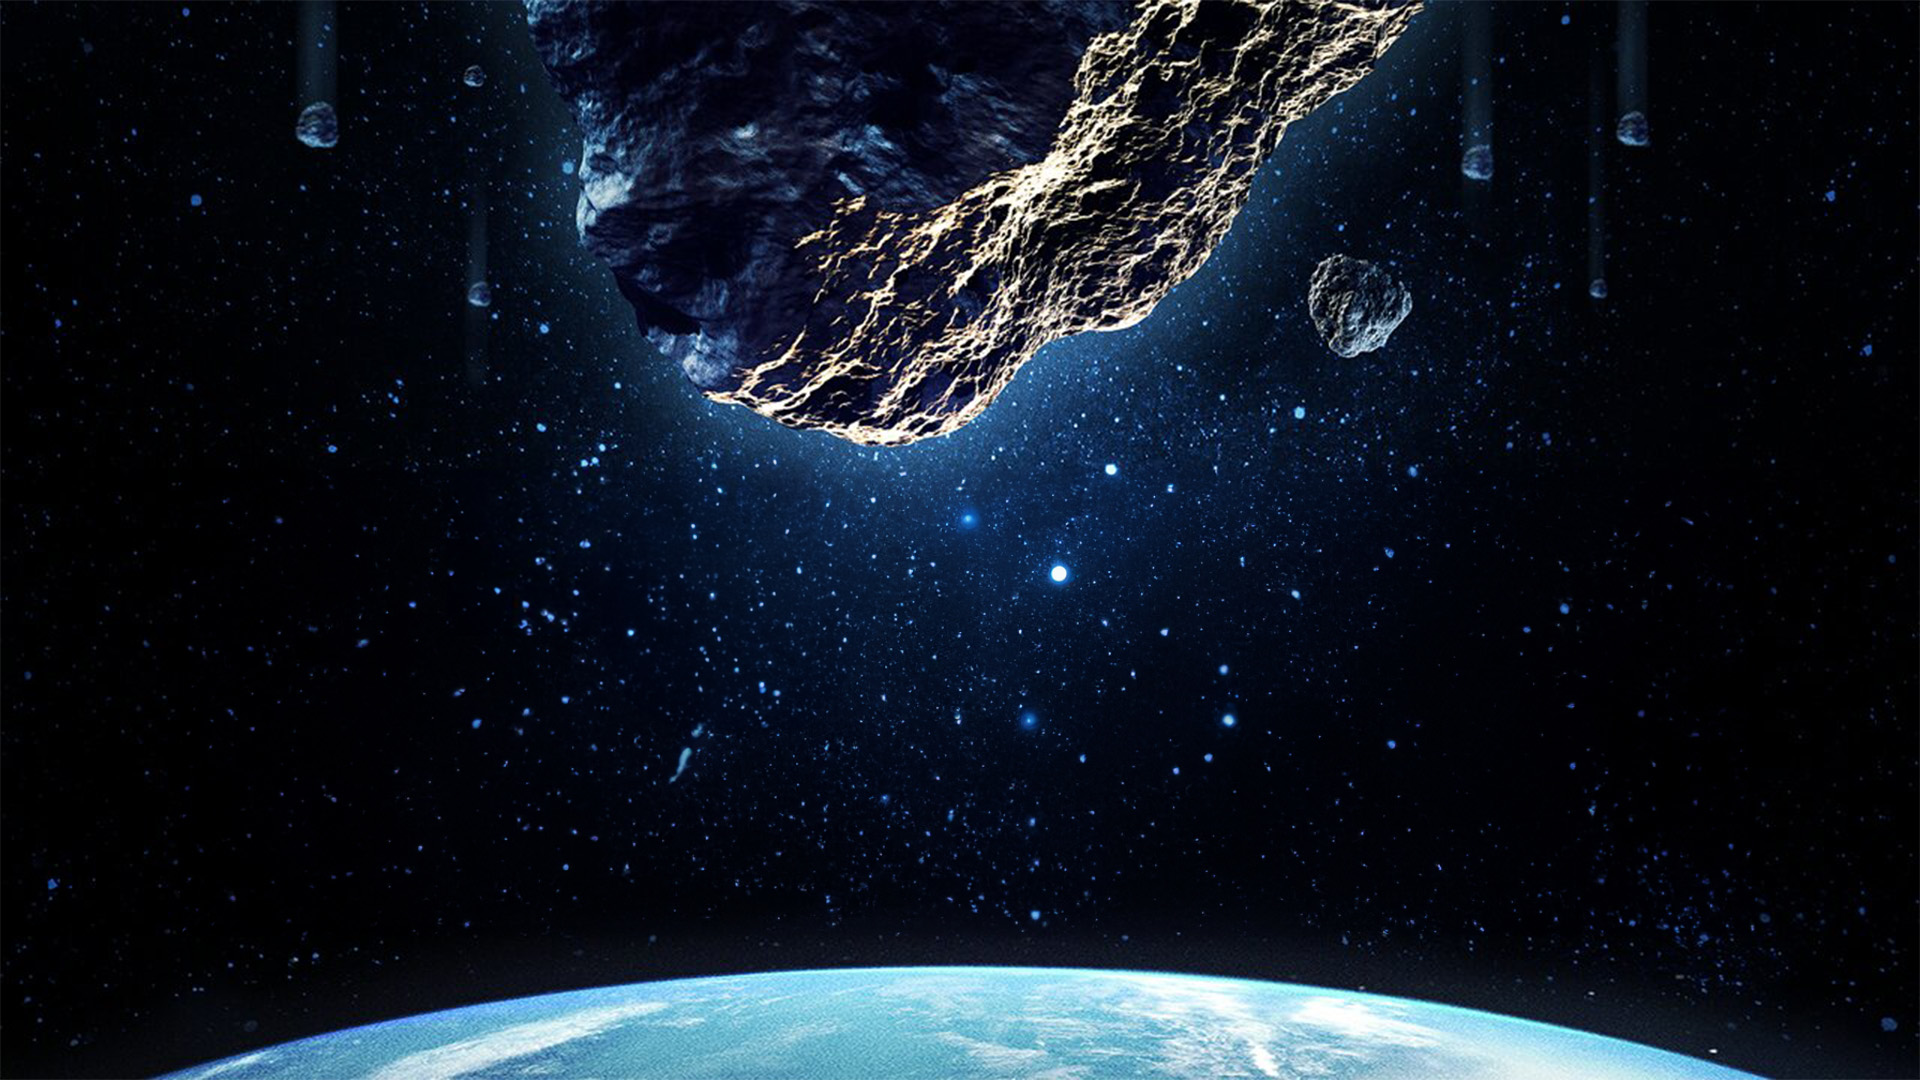 Asteroid-a-geddon